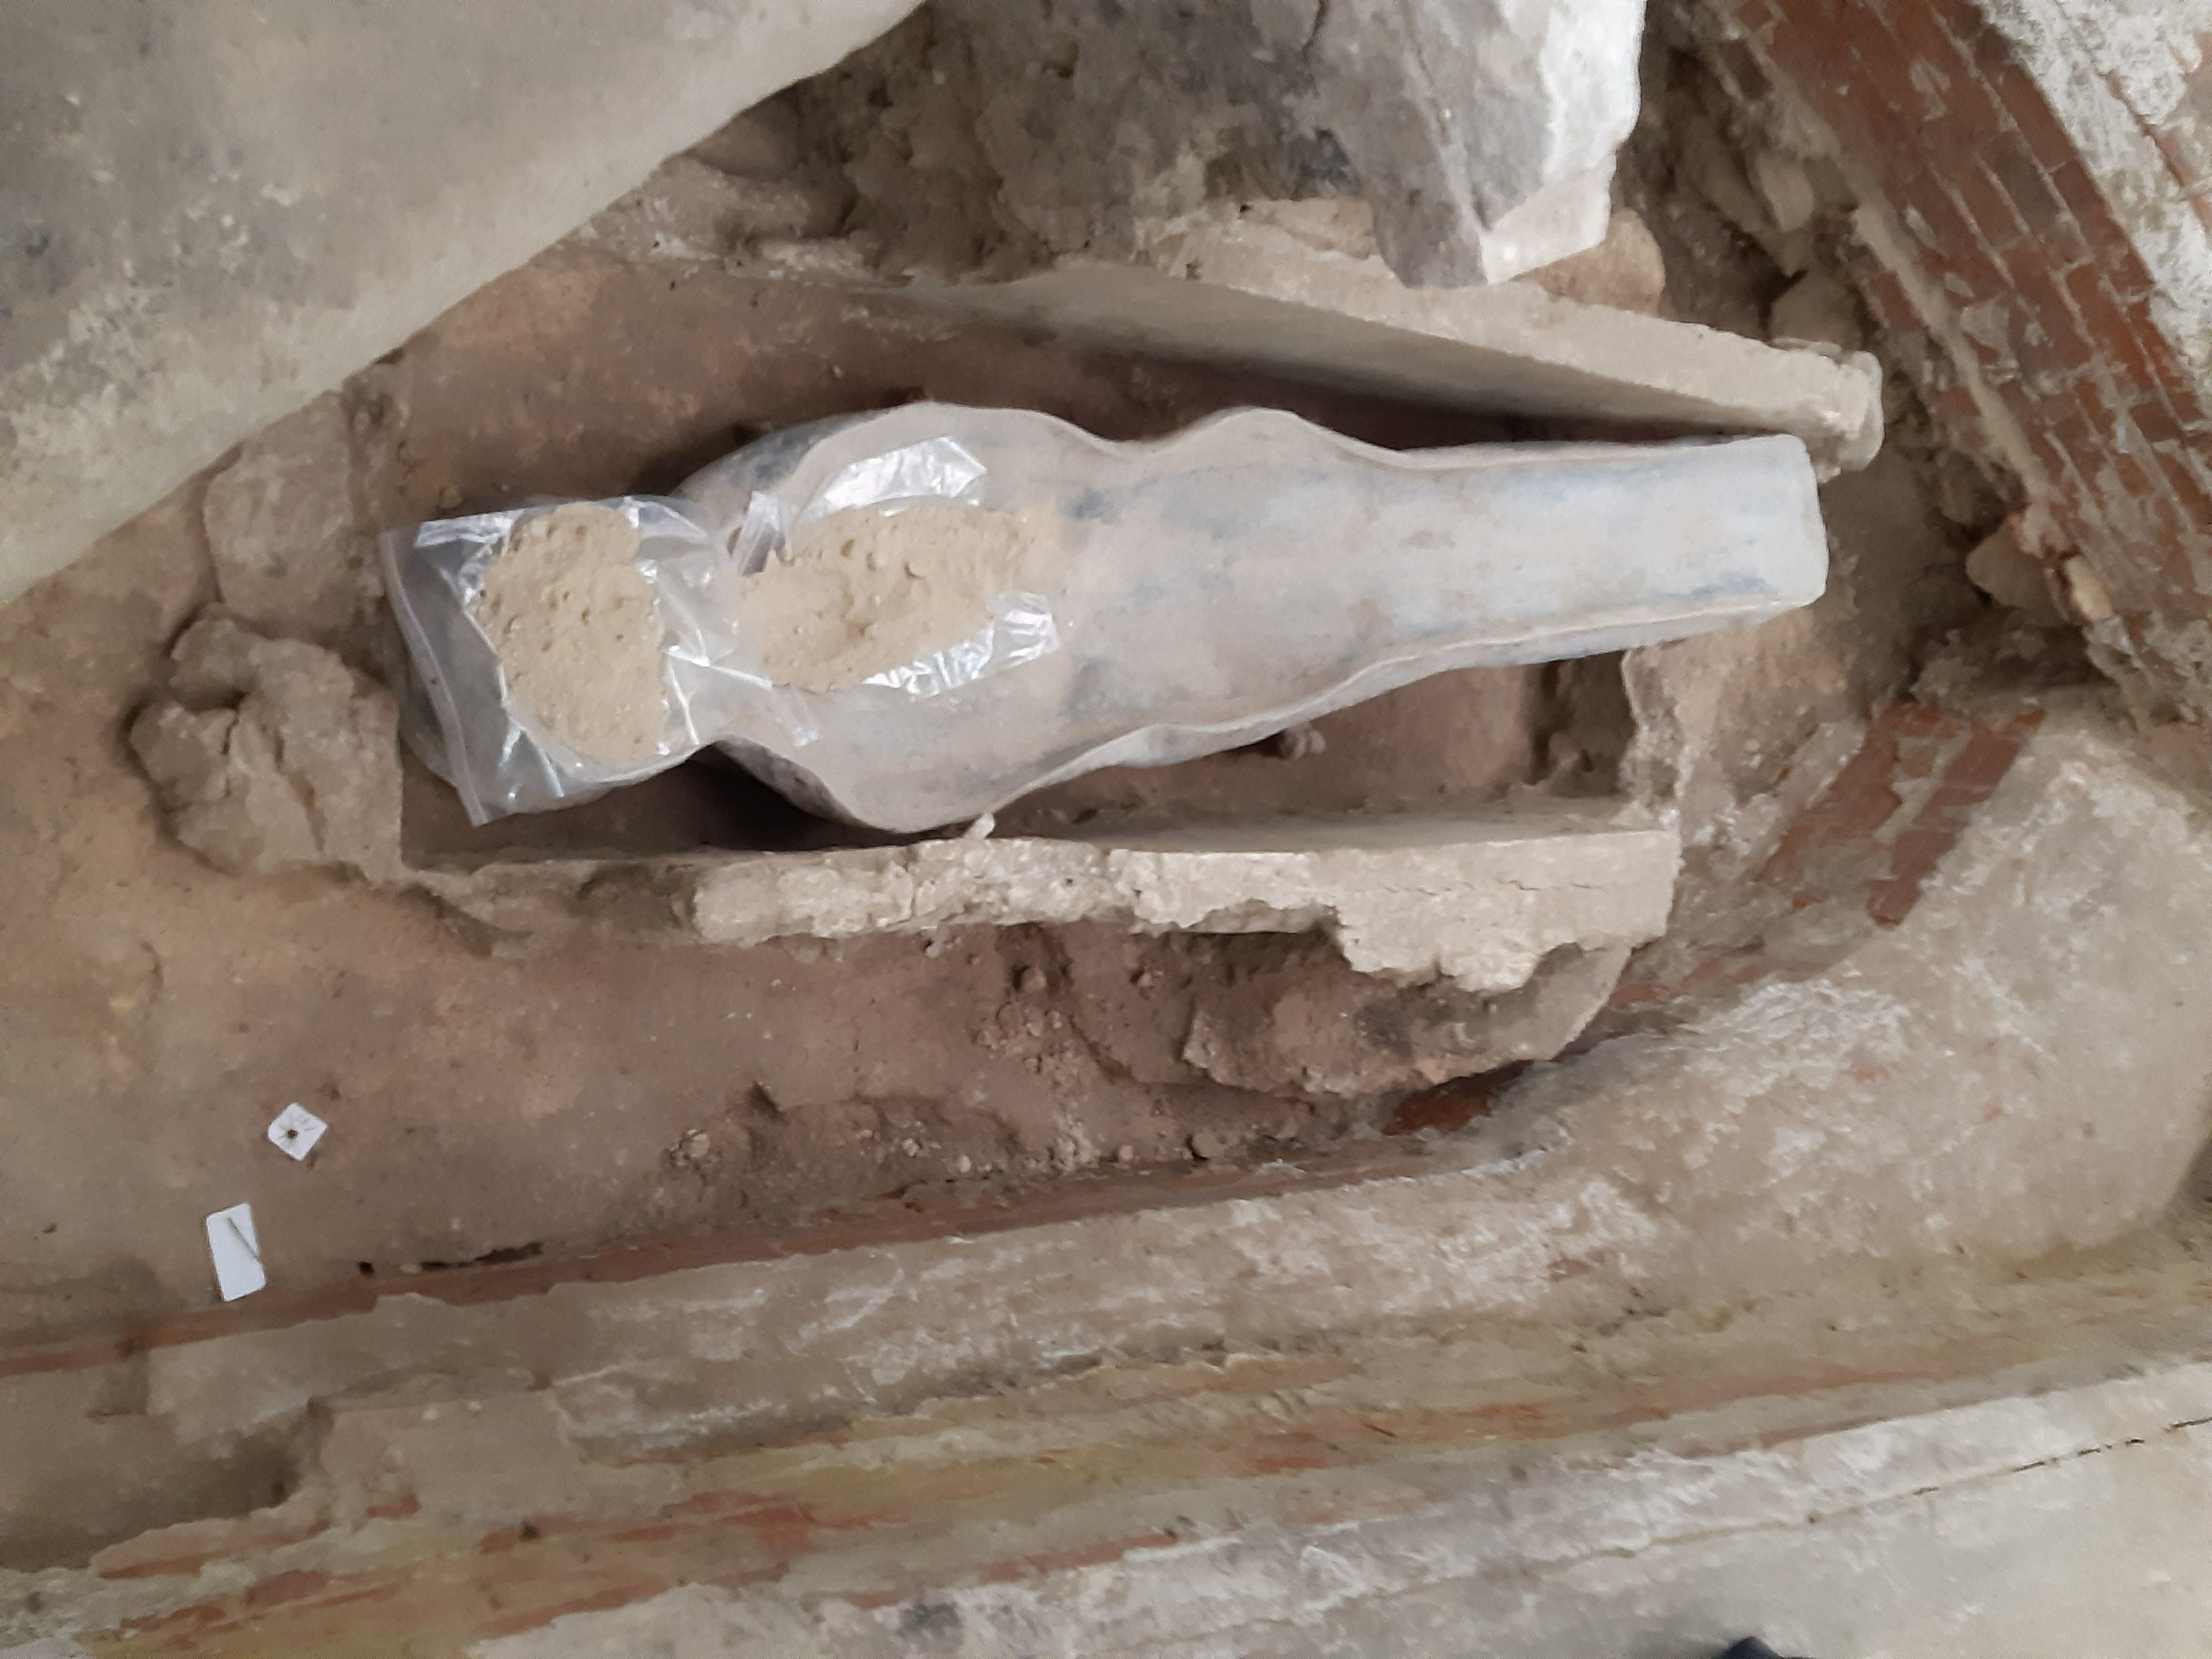 Paris, ce mardi. Ce sarcophage anthropomorphe en plomb, découvert dans le sol de Notre-Dame de Paris (IVe), date probablement du XIVe siècle. LP/Philippe Baverel